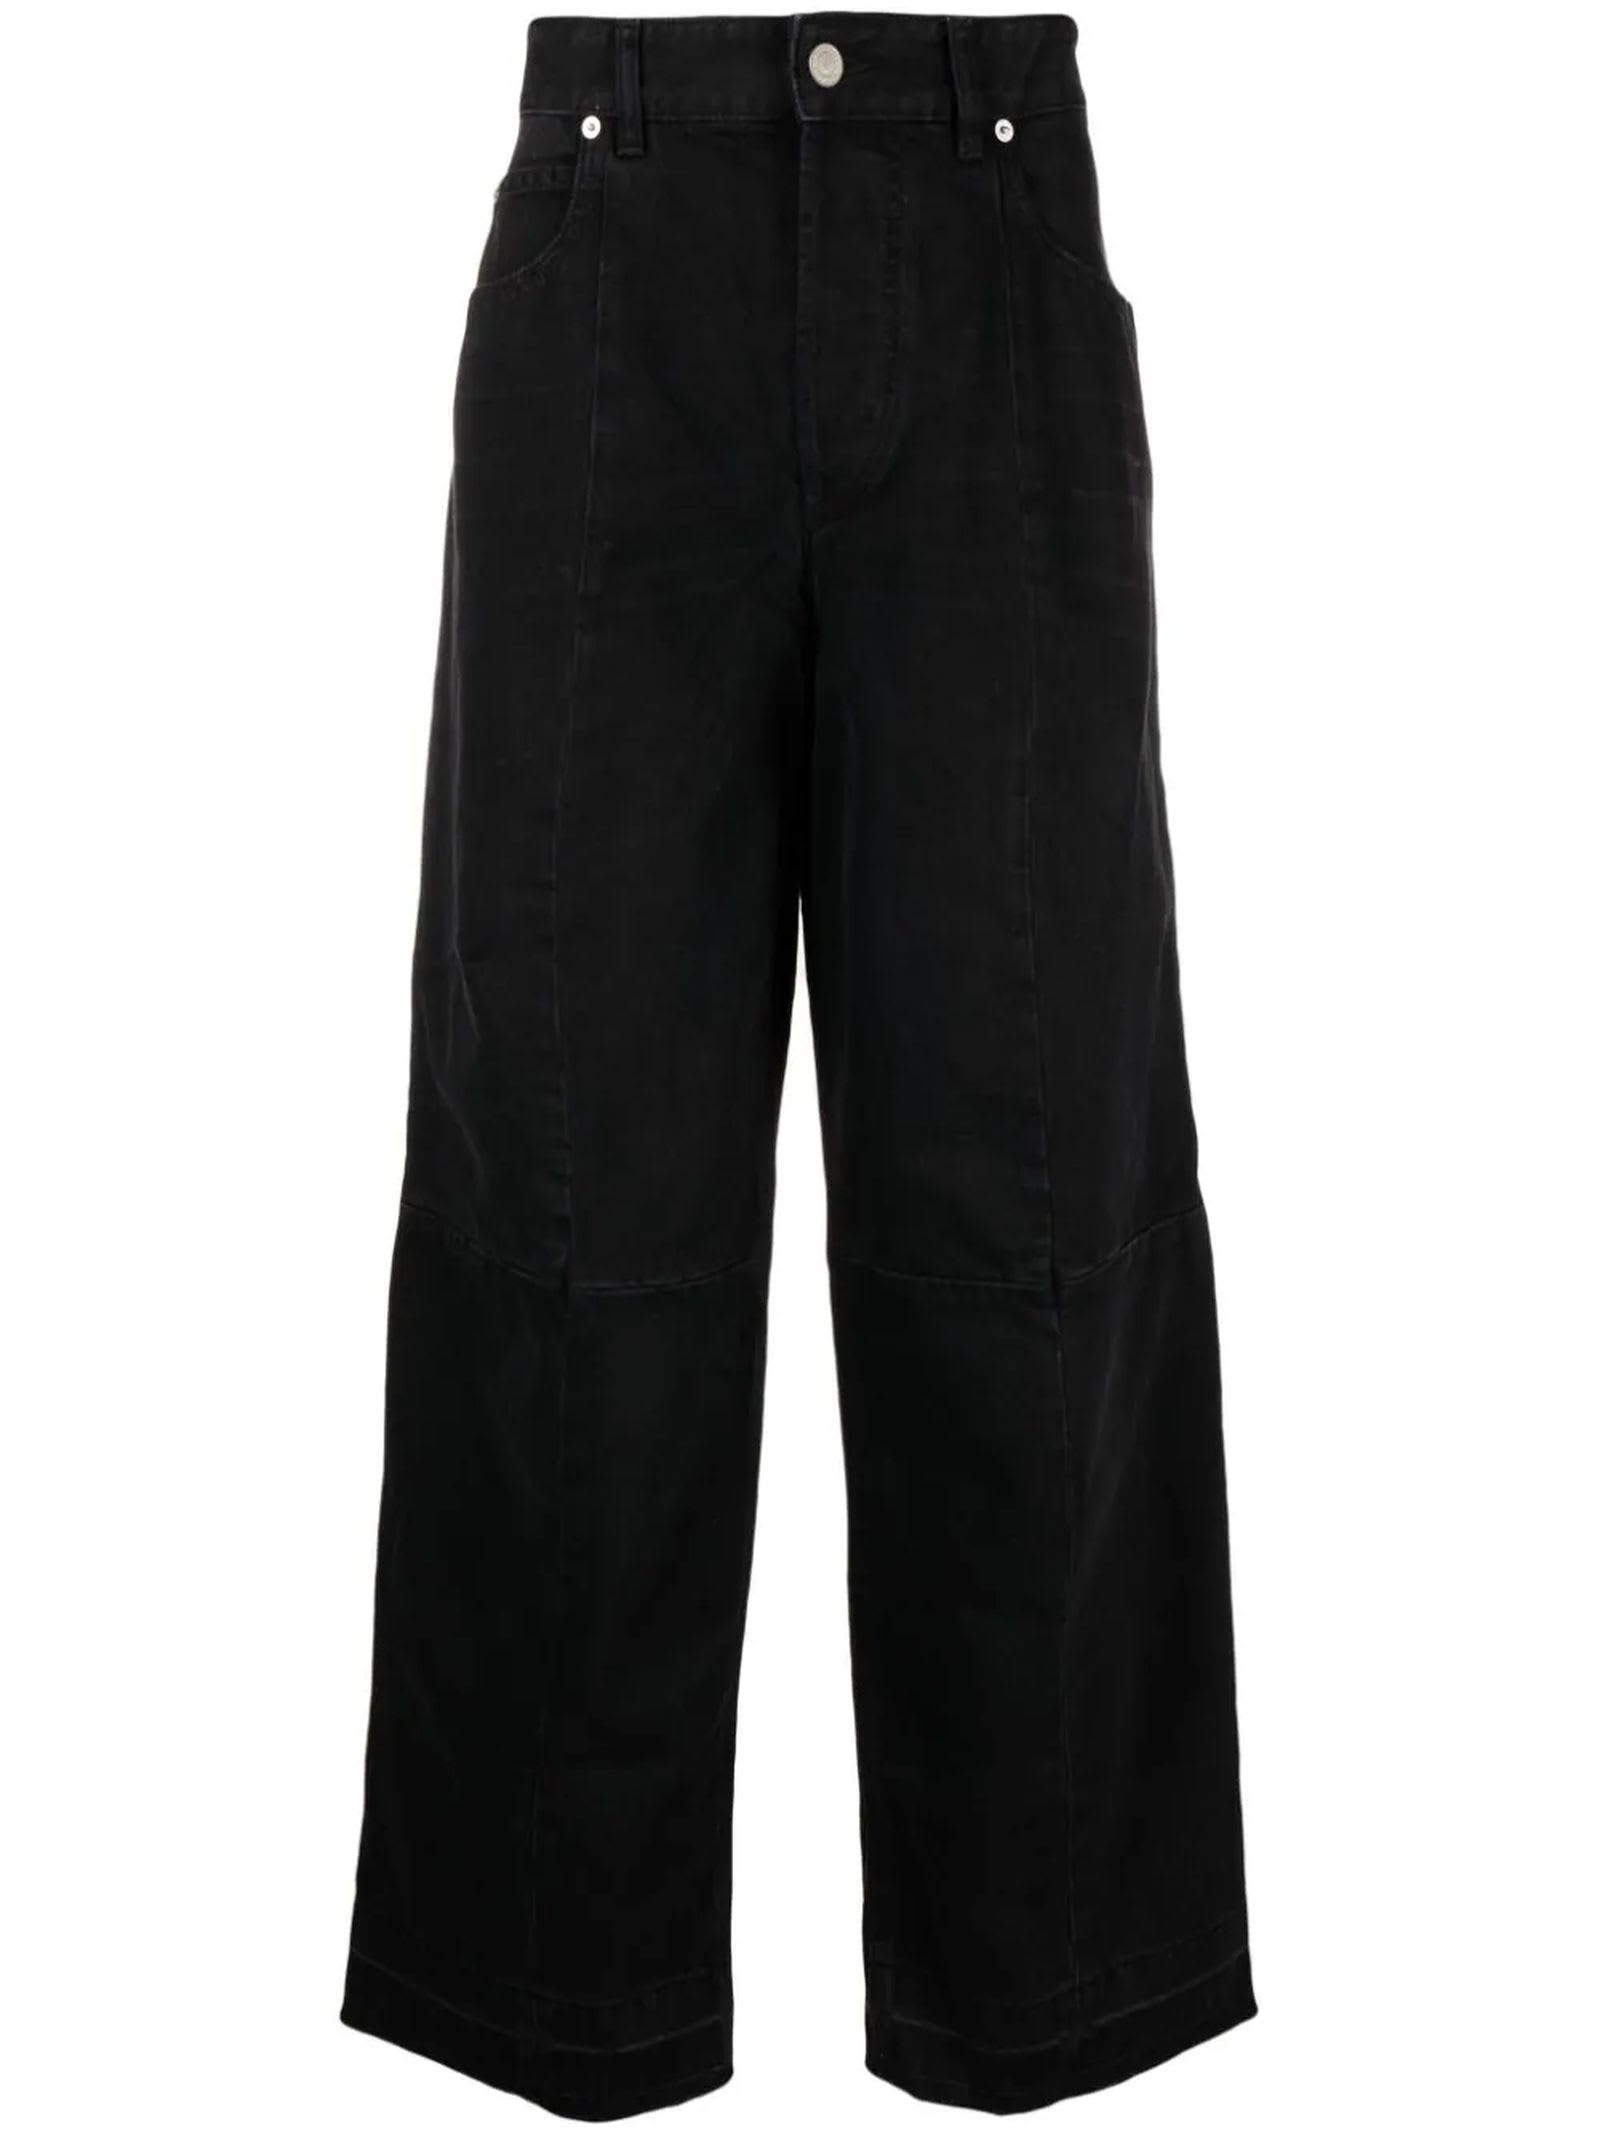 Isabel Marant Black Cotton Blend Trousers